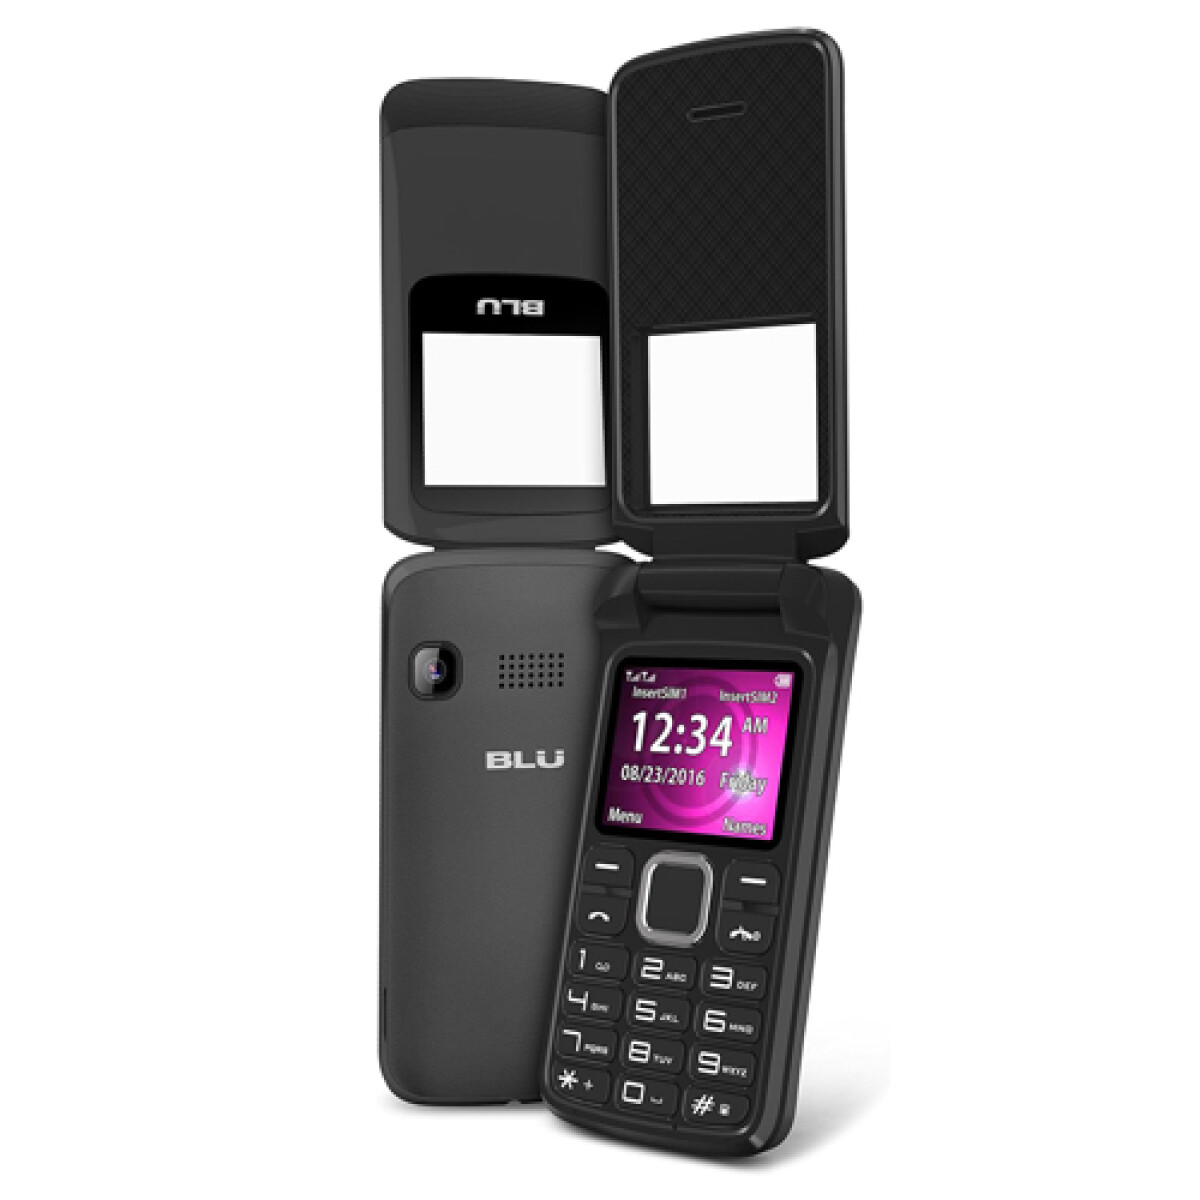 Blu Zoe celular flex tapita 3G - Z170 